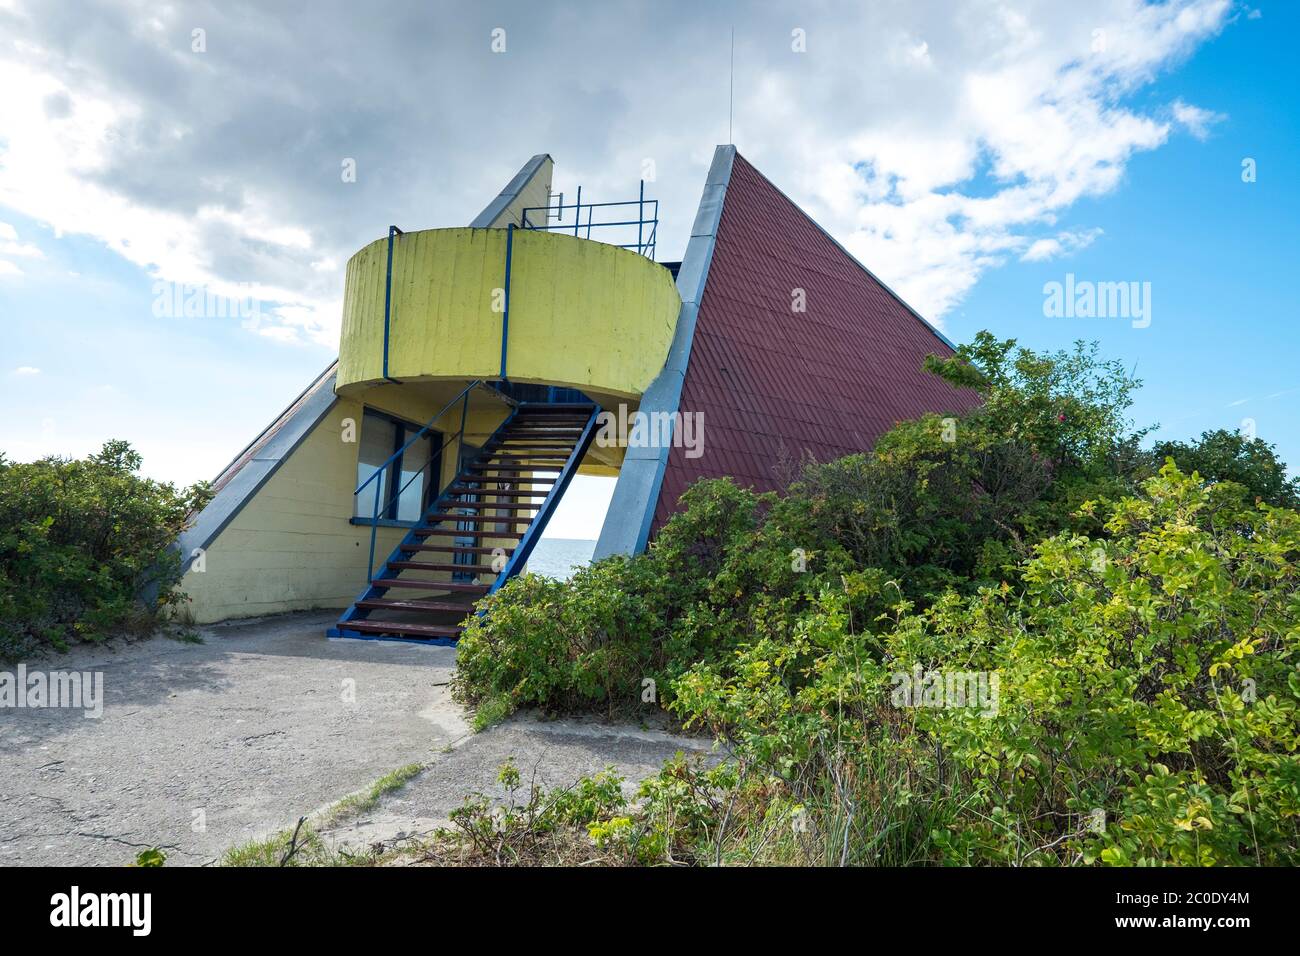 Un radical, style brutaliste, ancien URSS conçu maître-nageur, café surplombant la structure. Près de Nida sur la CCuronian Spit sur la mer Baltique en Lituanie. Banque D'Images